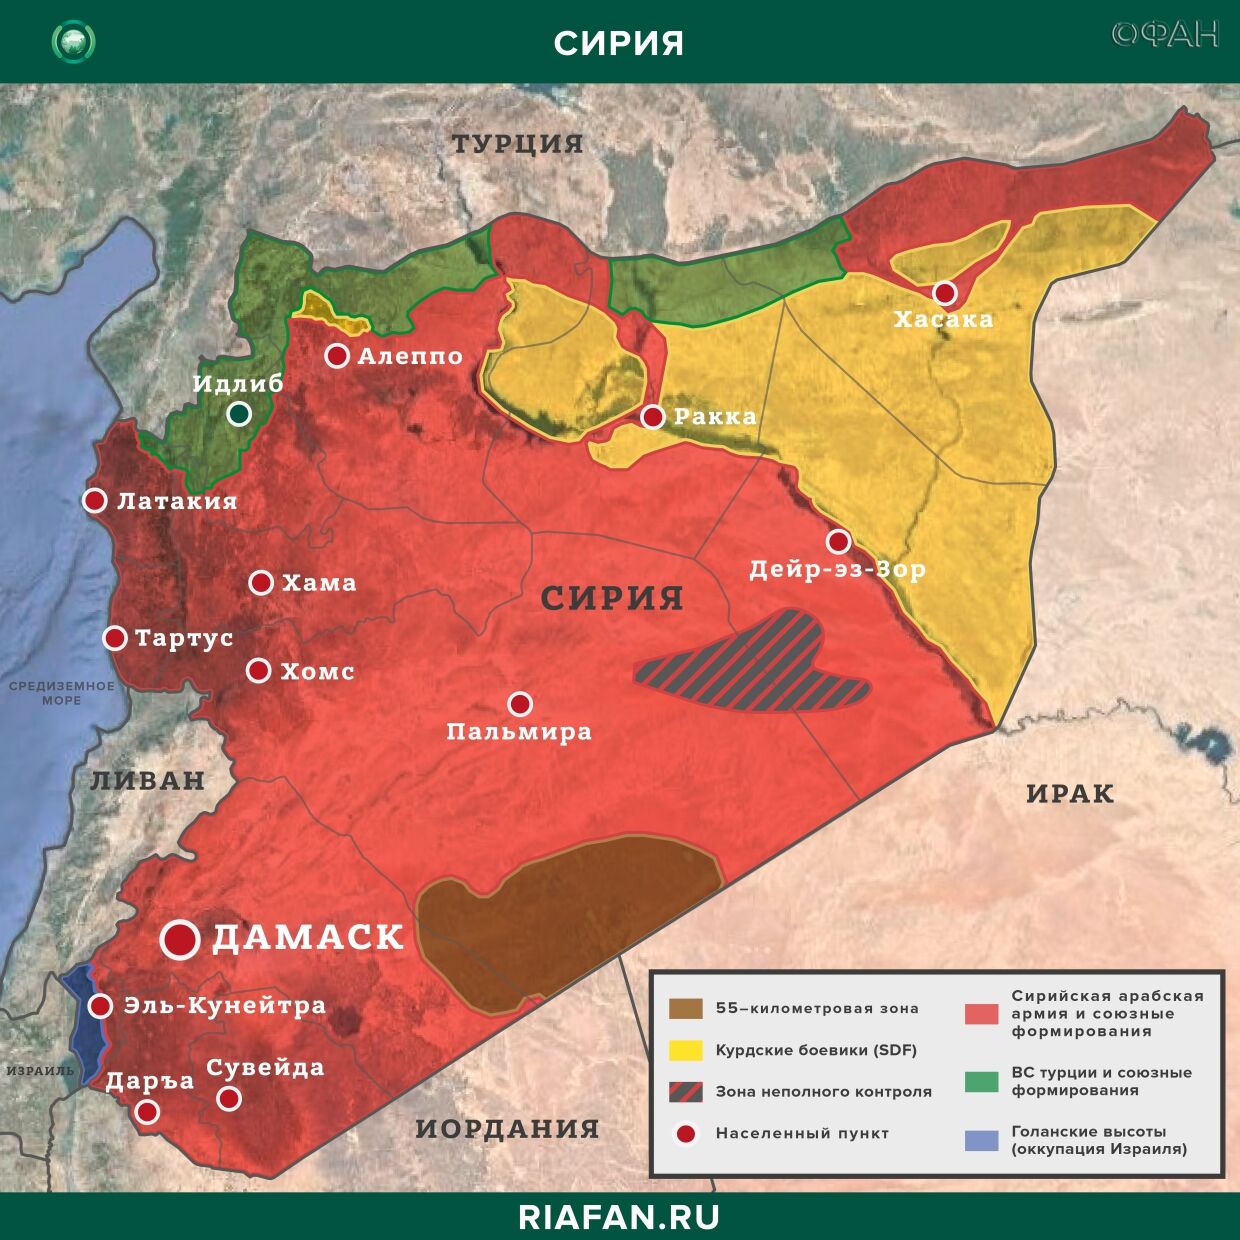 Noticias de Siria 27 Marzo 22.30: Турция провела патрулирование на шоссе М-4, жители Камышлы отказались пропустить конвой США